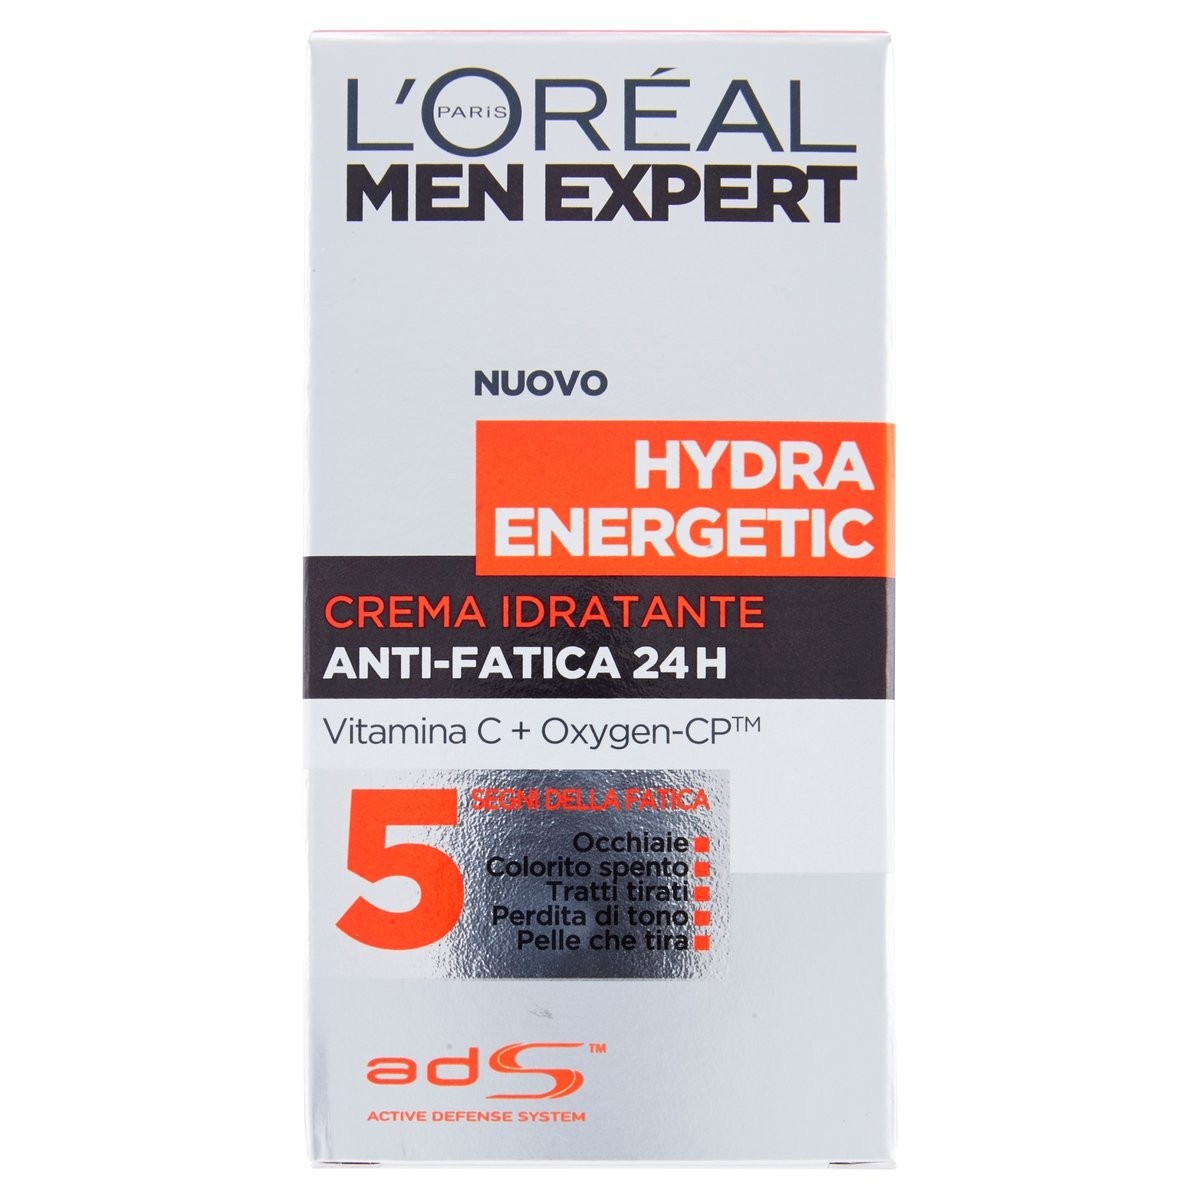 L'Oréal Paris Men Expert Crema idratante uomo Hydra Energetic